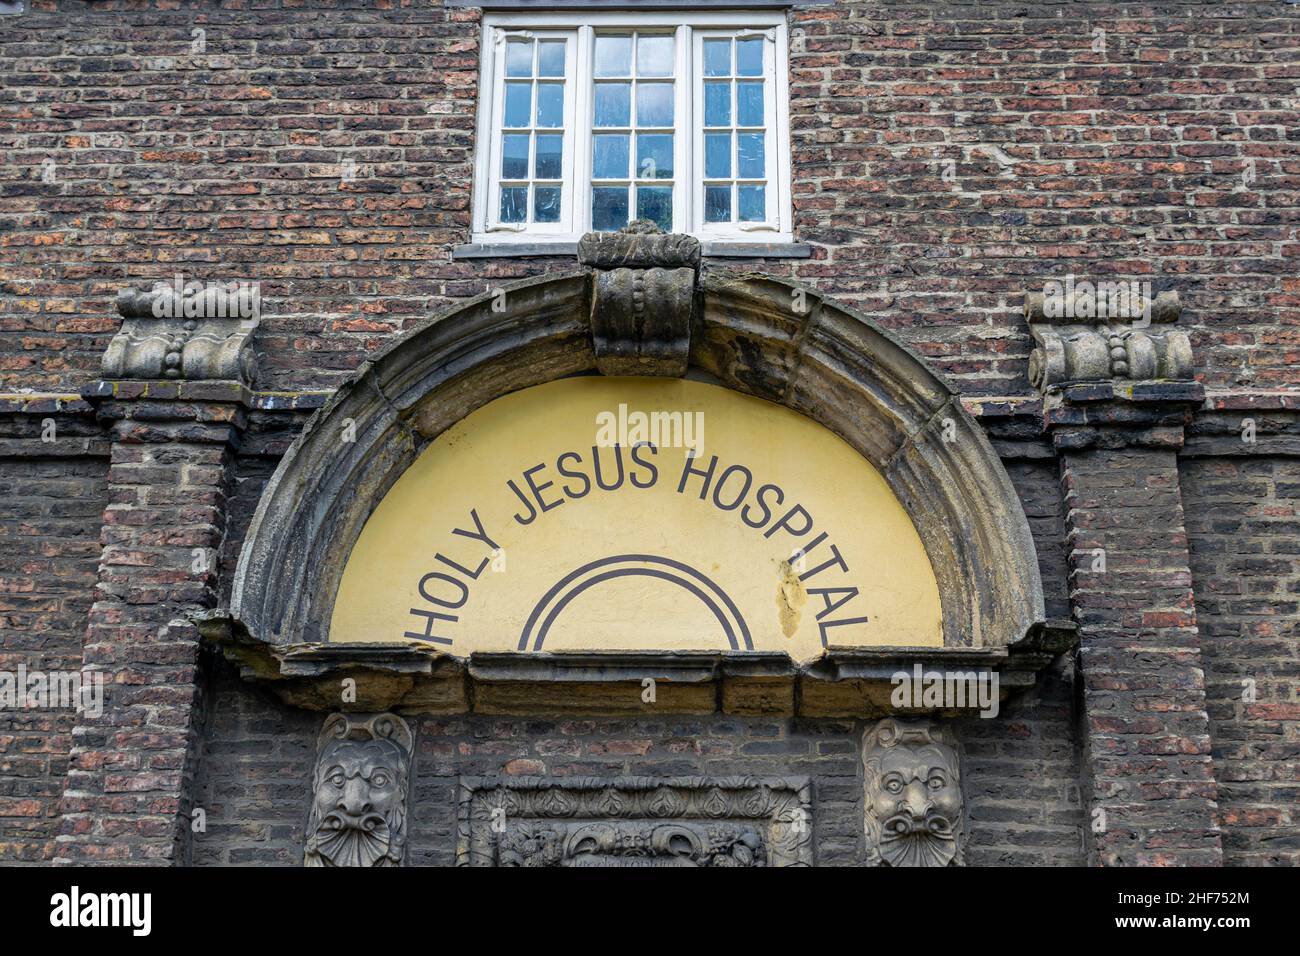 Newcastle, Großbritannien - 7. Mai 2019: National Trust Holy Jesus Hospital, Newcastle City Centre. Eines von nur zwei intakten Backsteingebäuden aus dem 17th. Jahrhundert Stockfoto